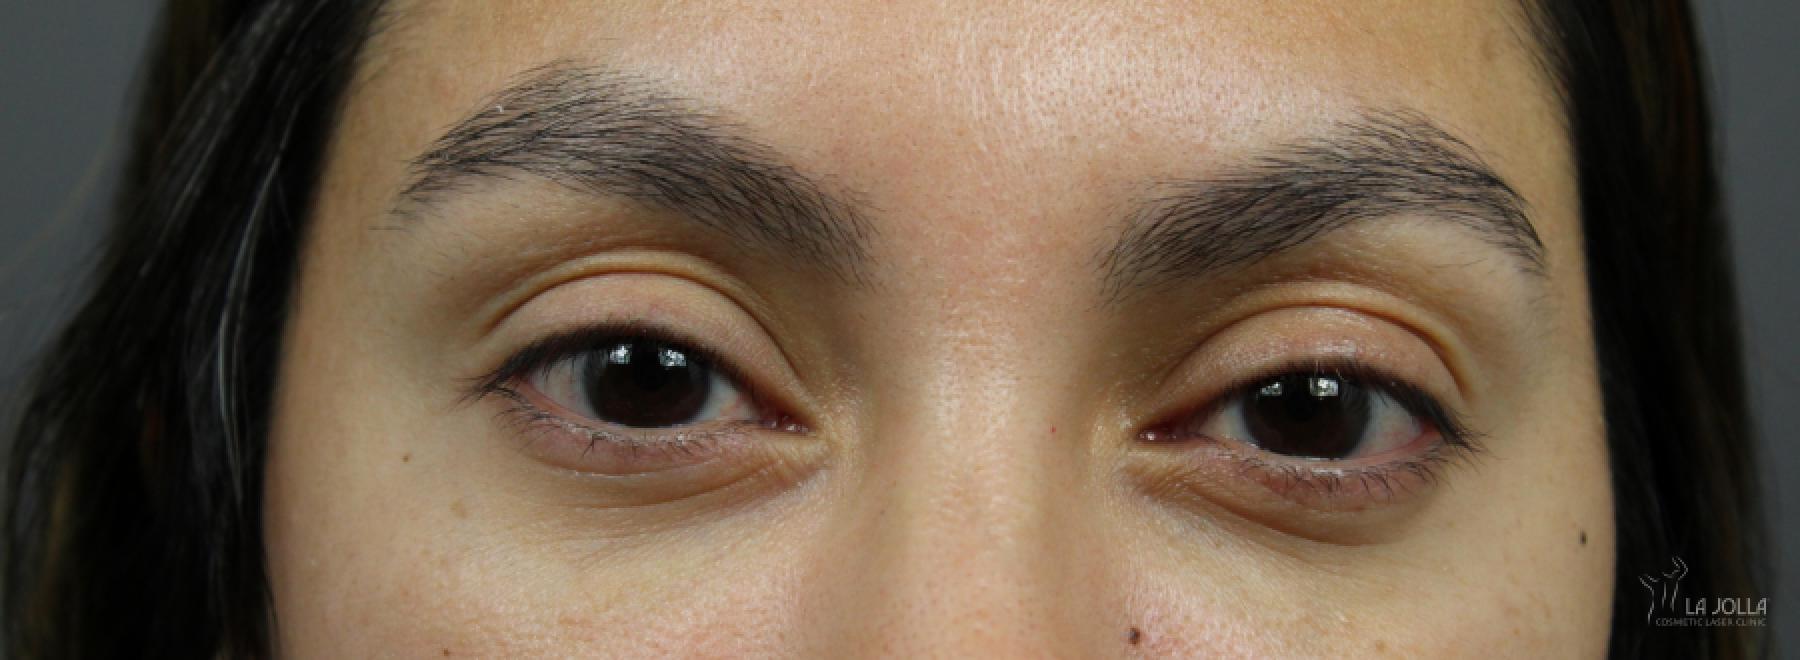 Under Eye Filler: Patient 6 - After 1